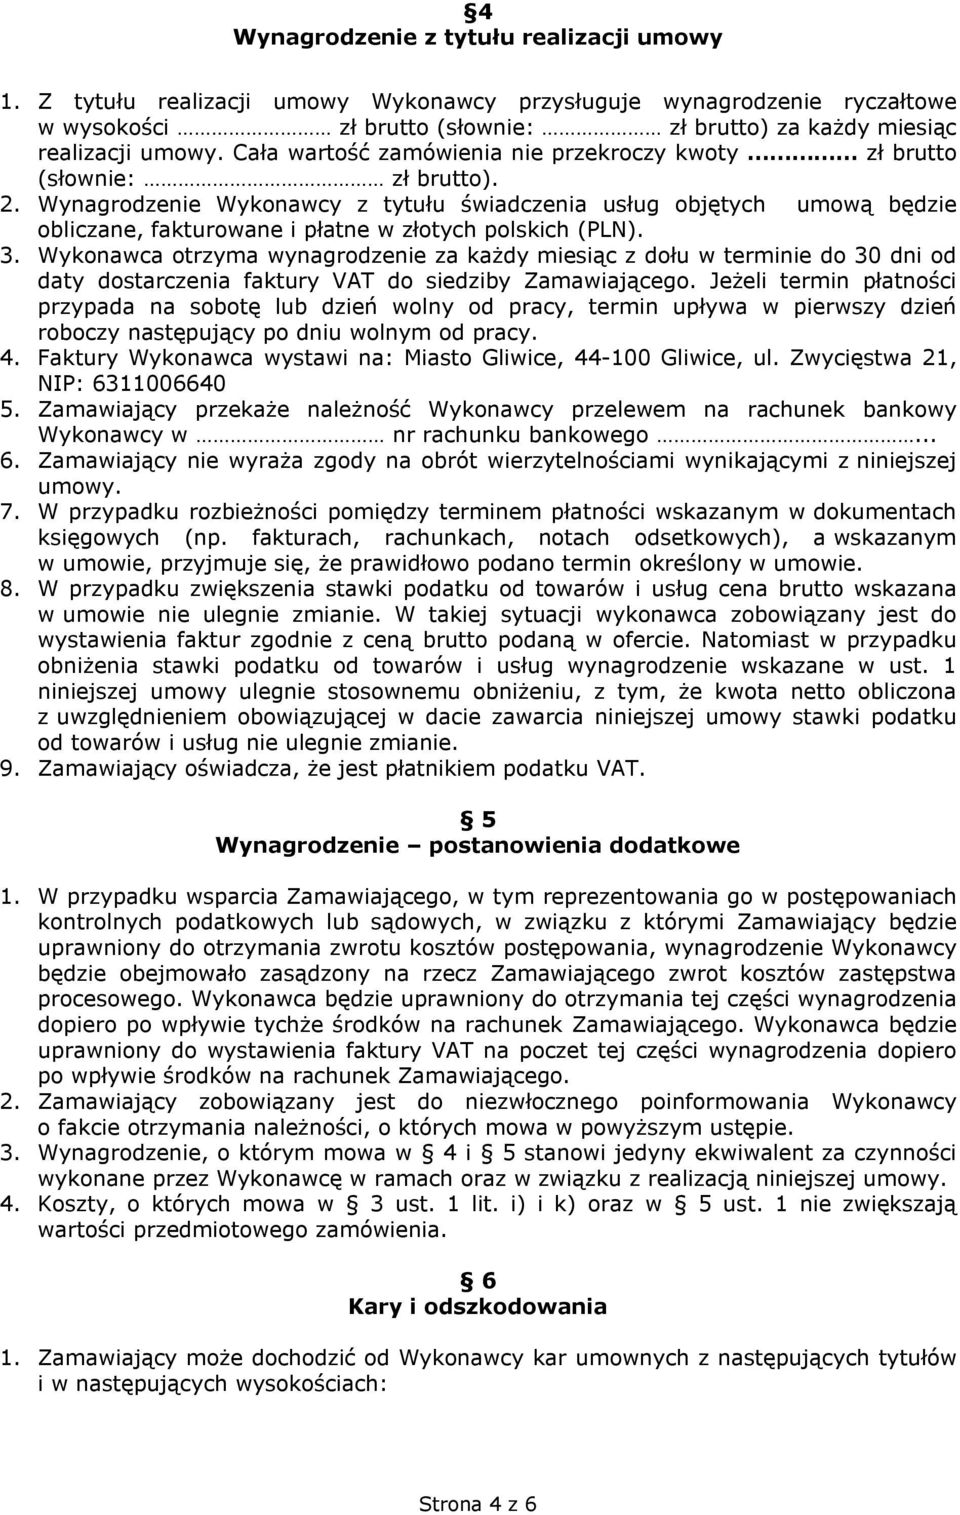 Wynagrodzenie Wykonawcy z tytułu świadczenia usług objętych umową będzie obliczane, fakturowane i płatne w złotych polskich (PLN). 3.